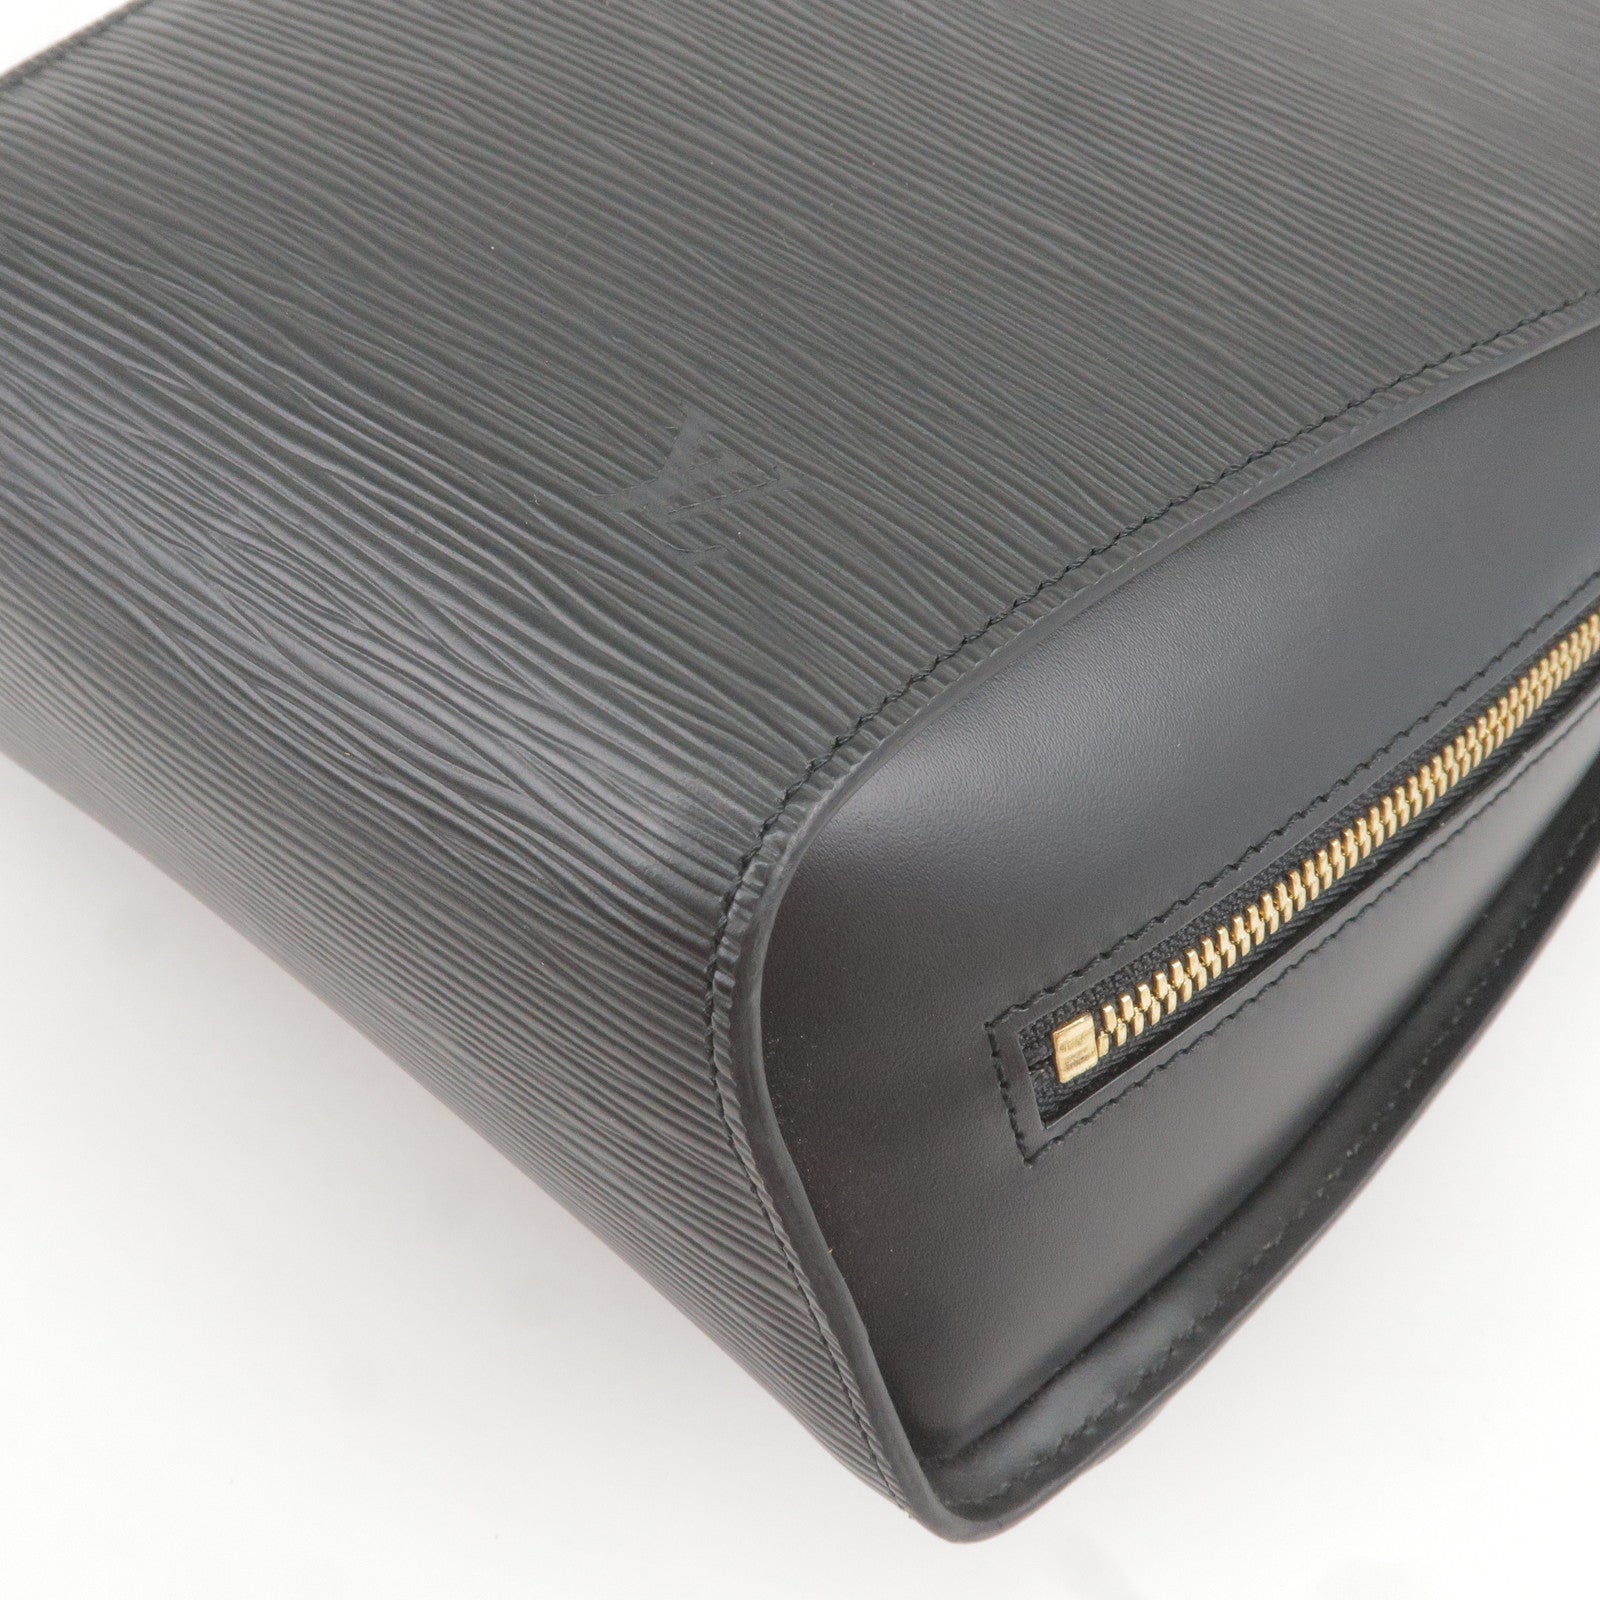 Louis-Vuitton-Epi-Leather-Mabillon-Backpack-Noir-N52232 – dct